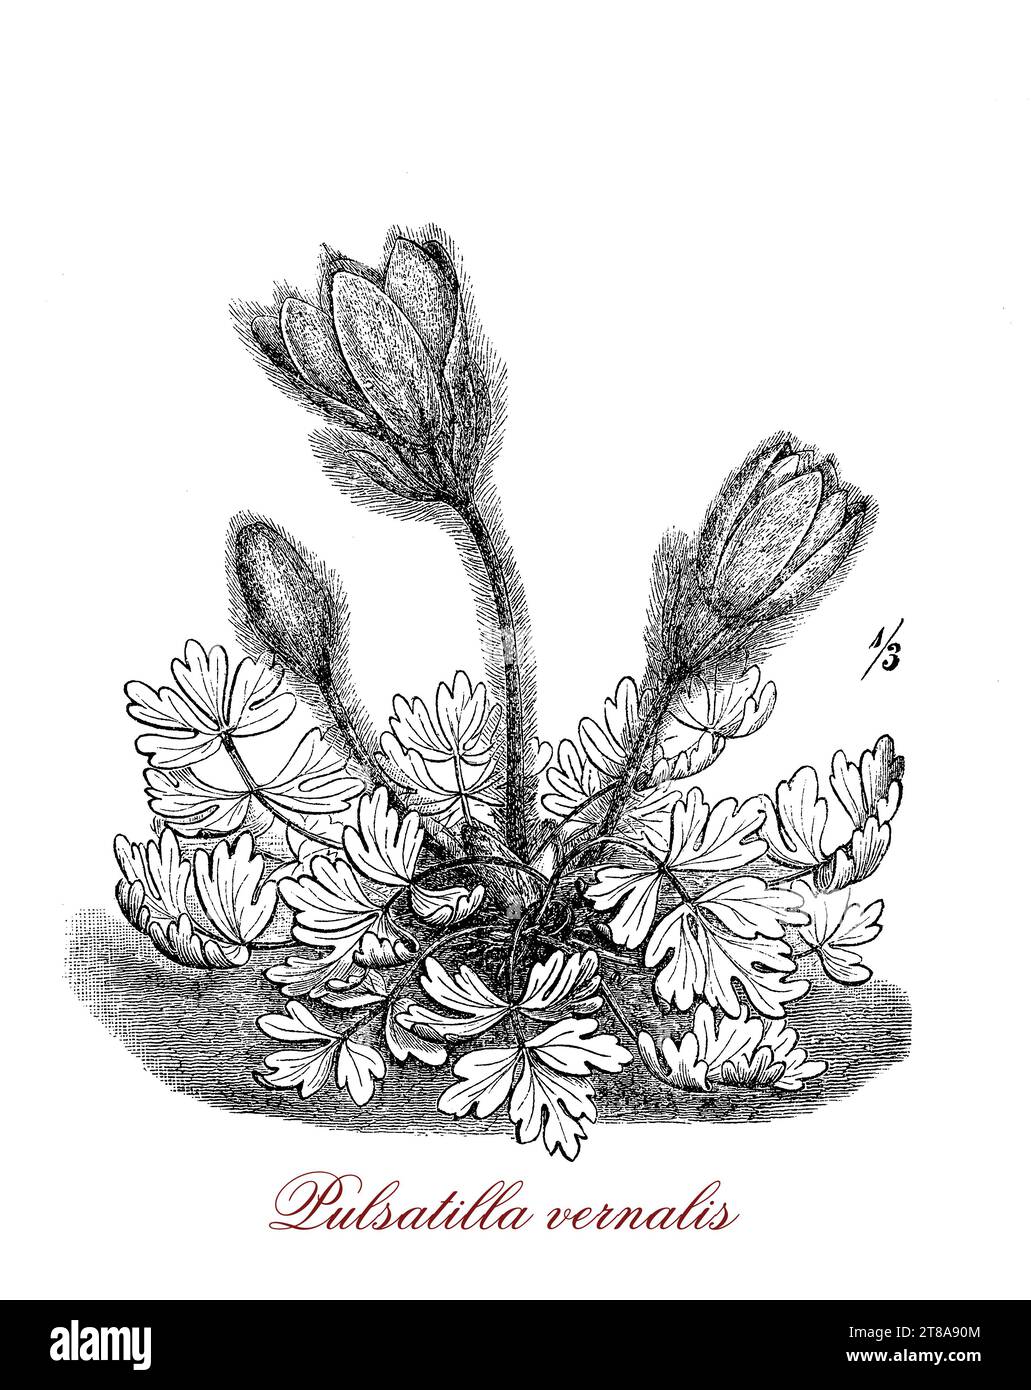 Pulsatilla vernalis ou plante à fleurs de pasque appartenant à la famille Buttercup originaire de l'Europe montagneuse avec des fleurs violettes en forme de cloche adaptées à un jardin alpin. Banque D'Images